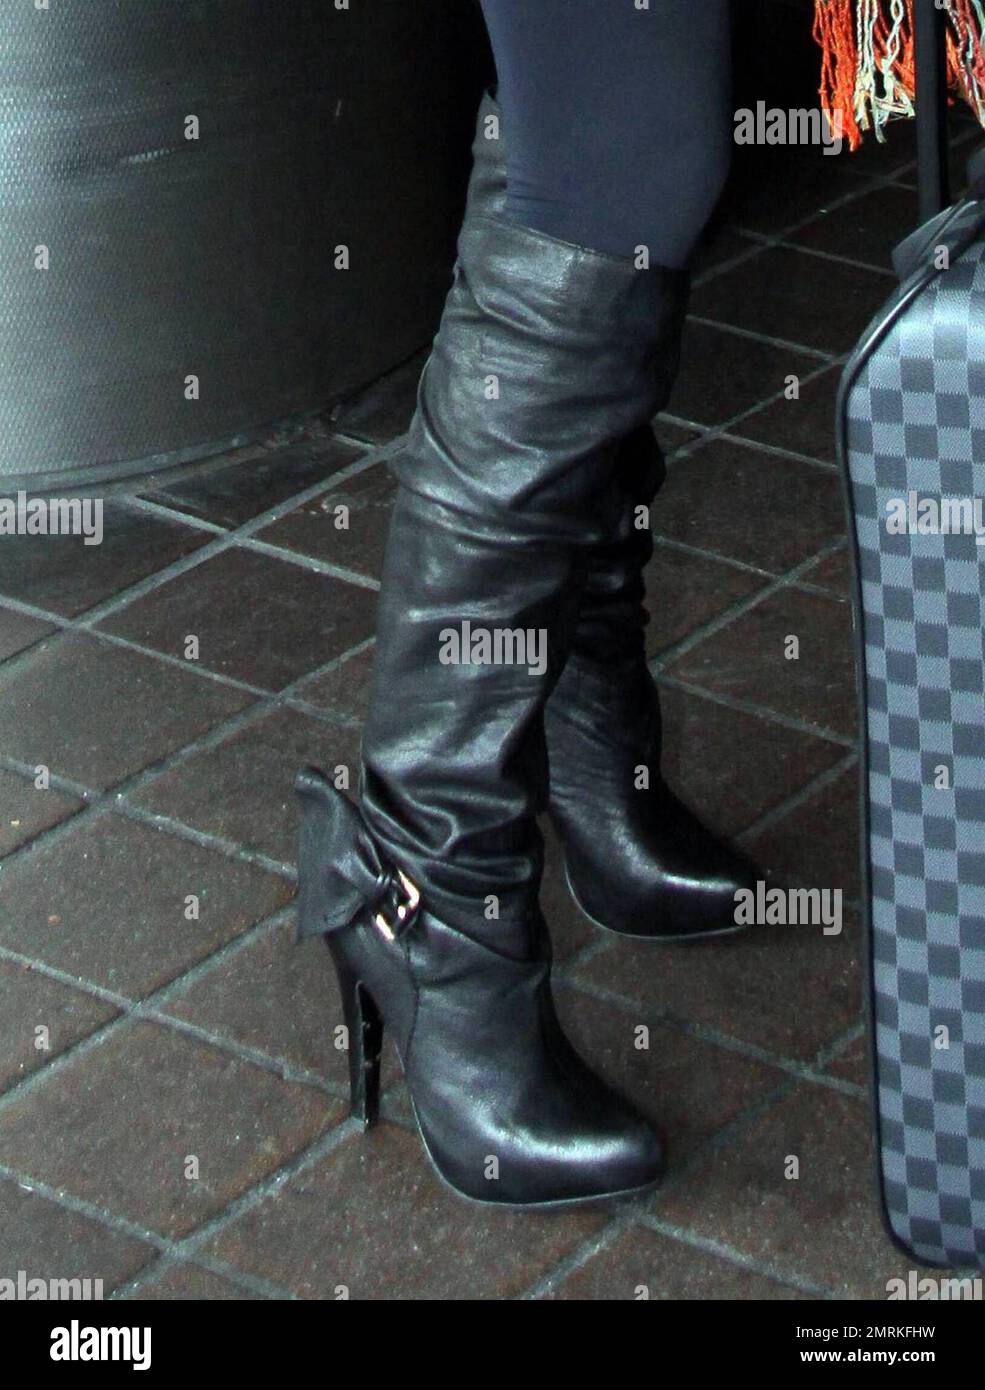 Exclusivo! Kim Kardashian muestra sus famosas curvas con una chaqueta  vaquera pálida de moda recortada, un mini vestido que abraza la figura y  botas negras de tacón alto. Cuando Kim salió de